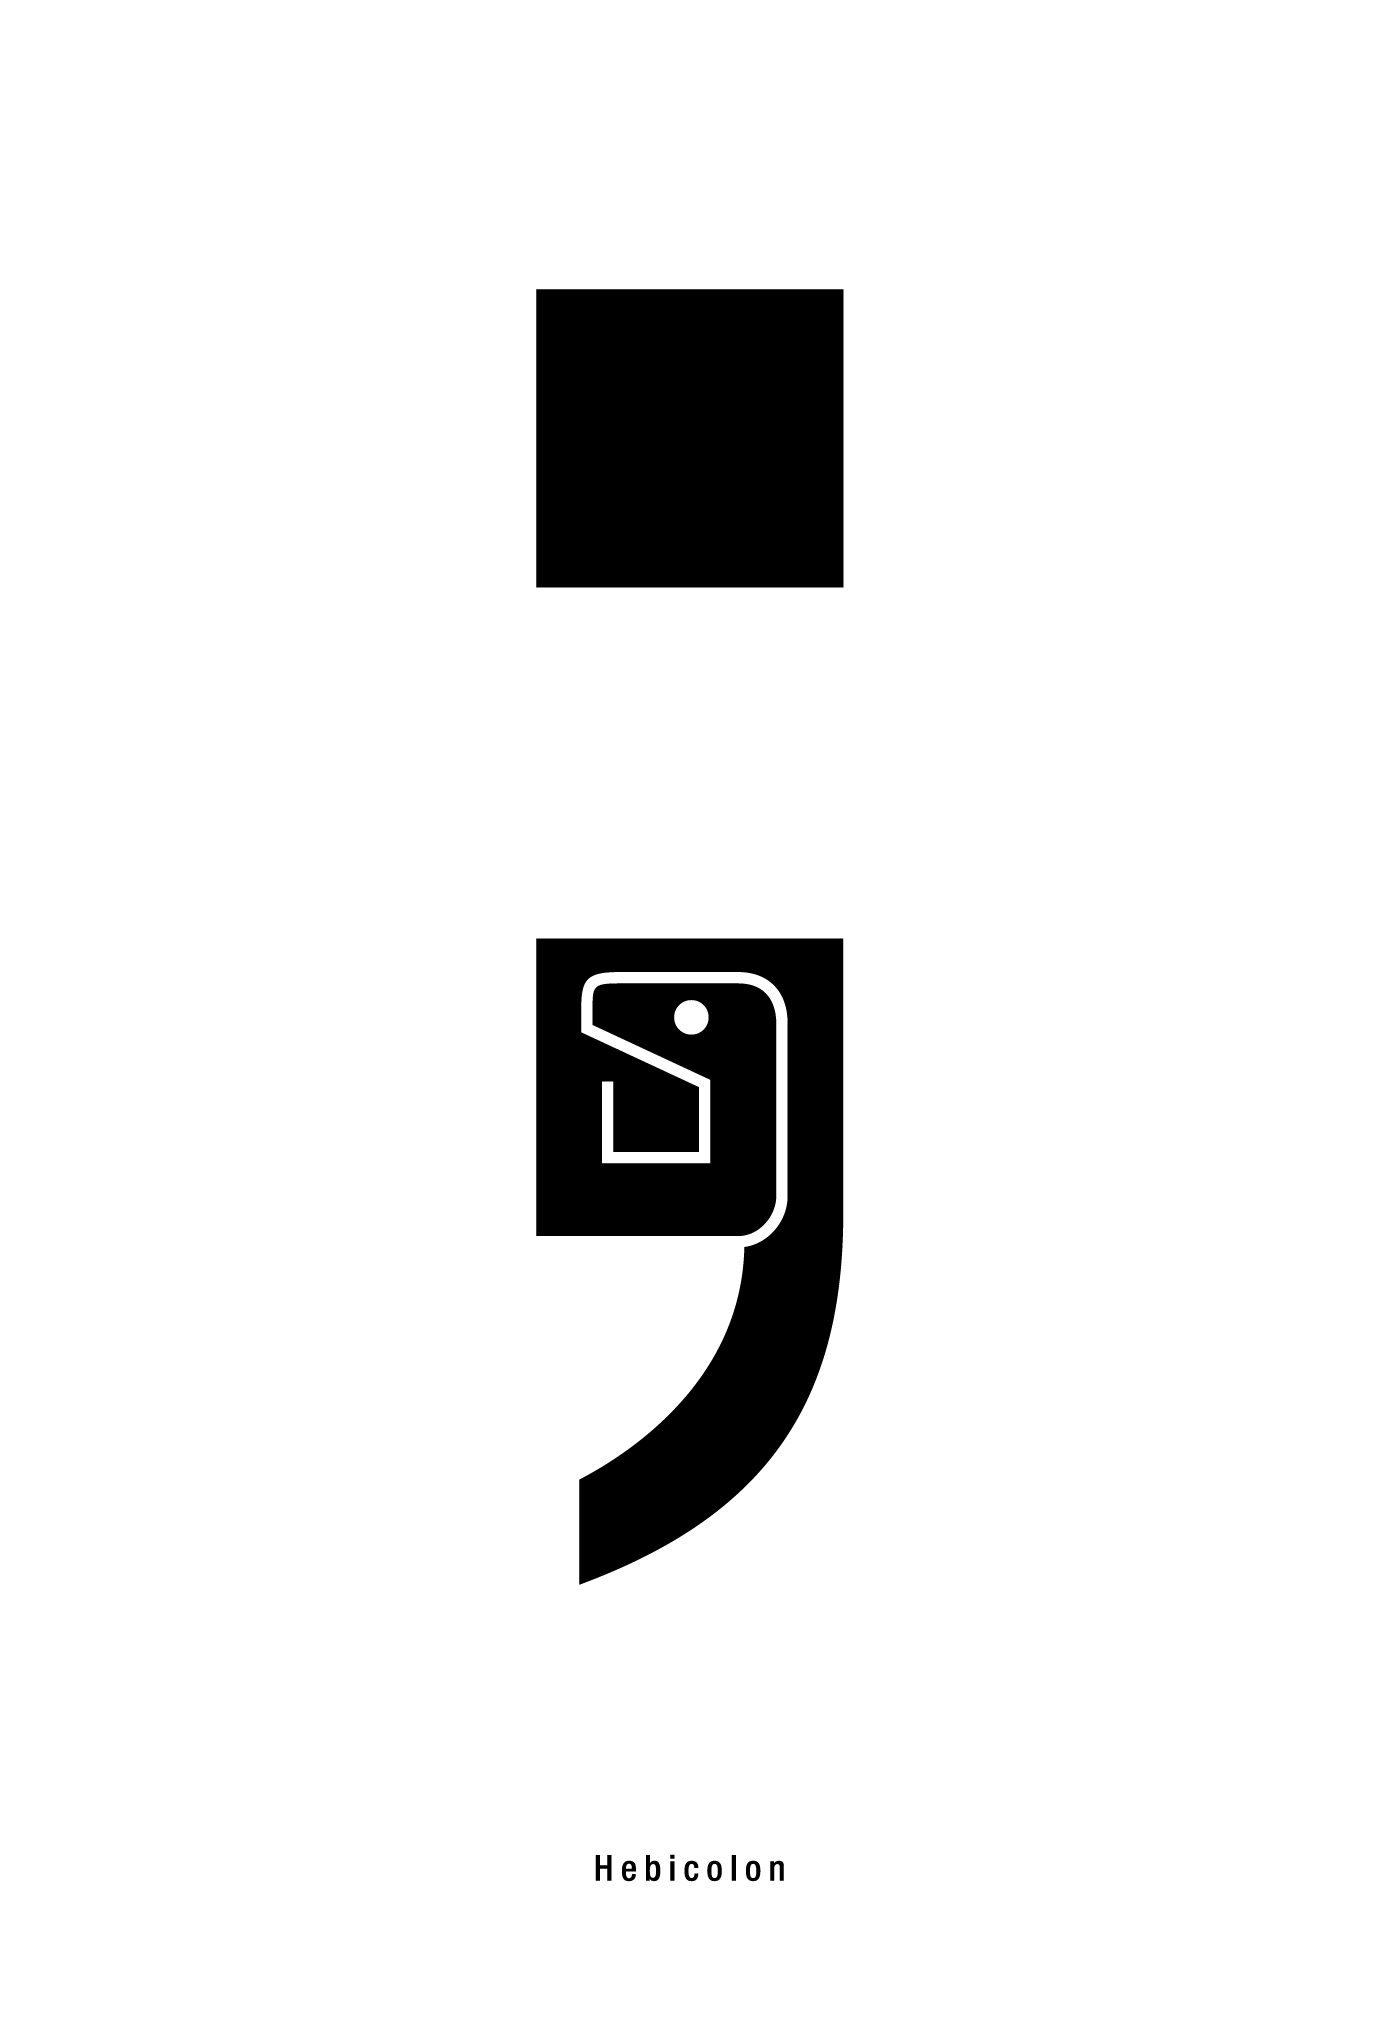 2013年賀状12-4：Semicolon ; Hebicolon / 4のダウンロード画像